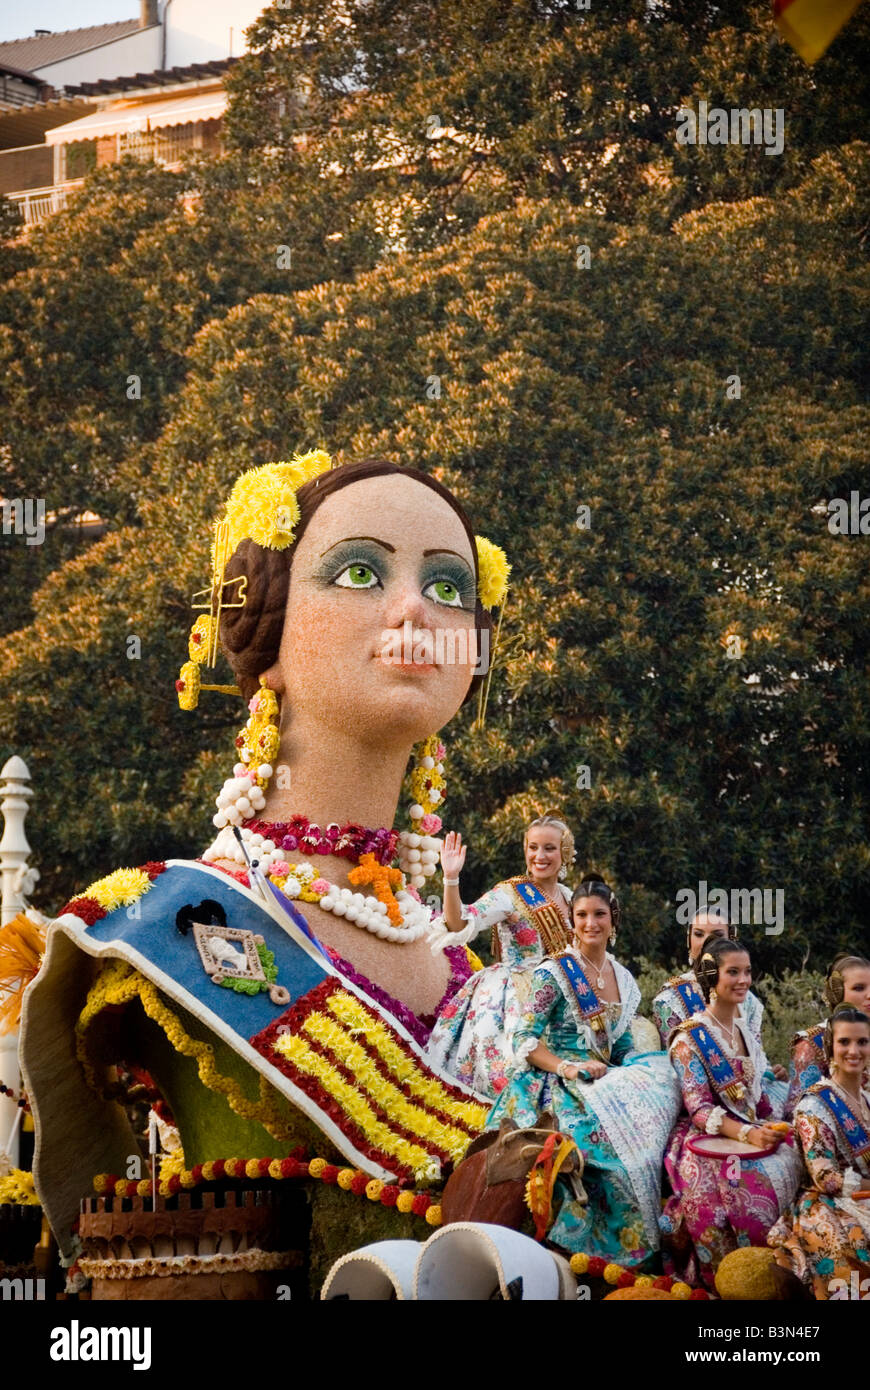 Femme espagnole en costume traditionnel sur un flotteur au cours de la  Bataille de fleurs ou Batalla de Flores à Valence Espagne Photo Stock -  Alamy